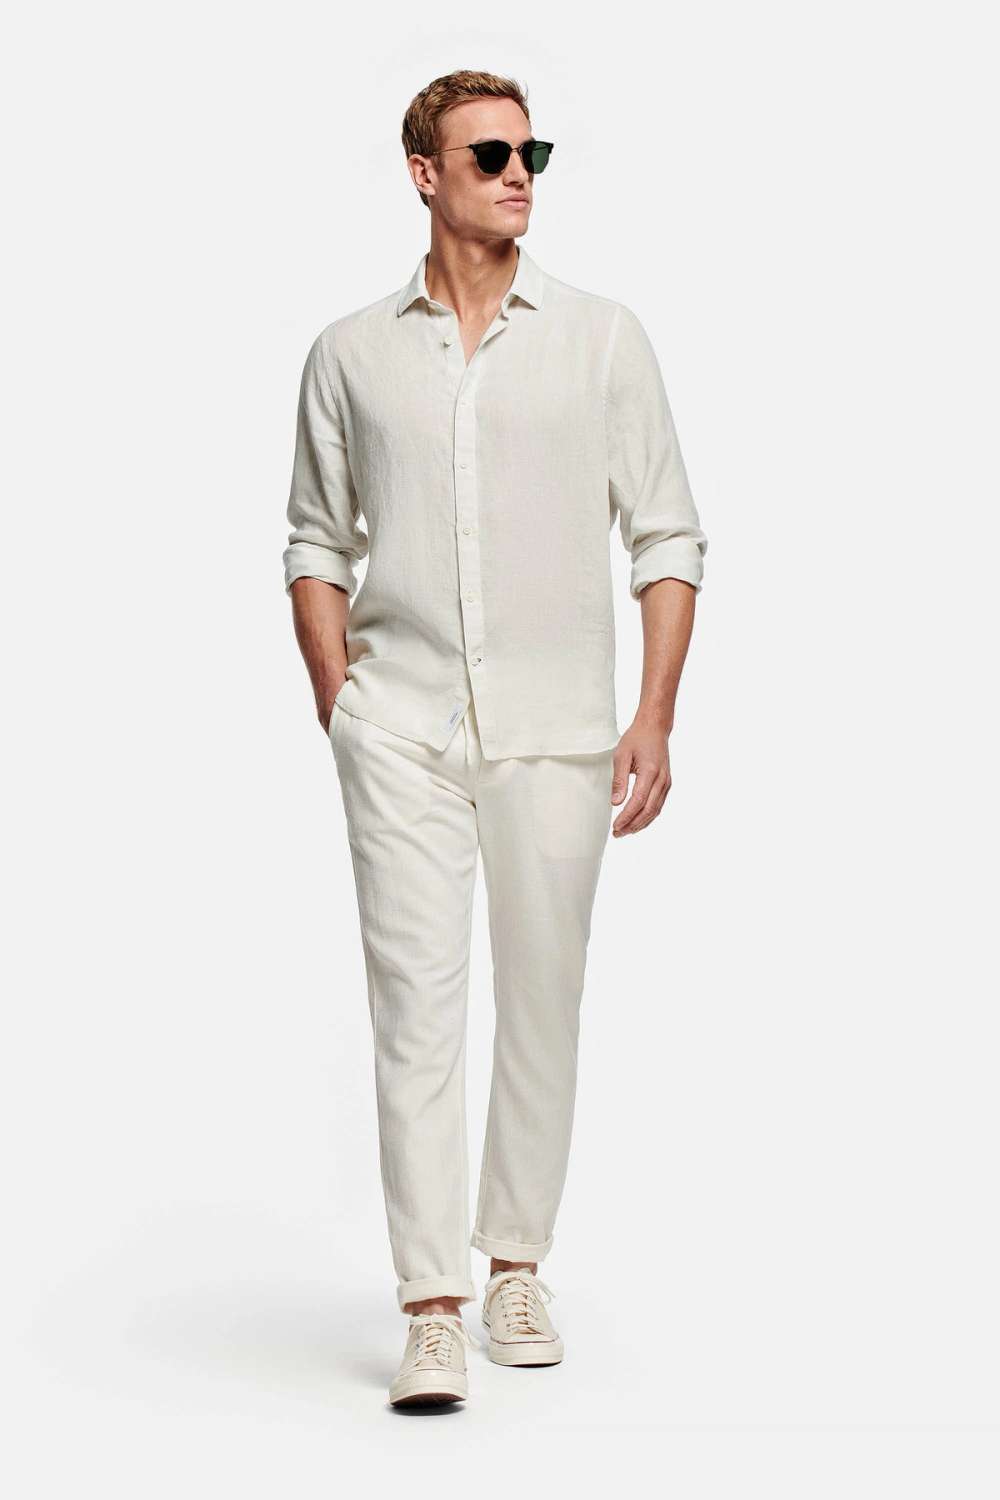 5 looks con pantalón de lino blanco Inspírate  White linen pants,  Linen pants outfit, Pant outfits for women